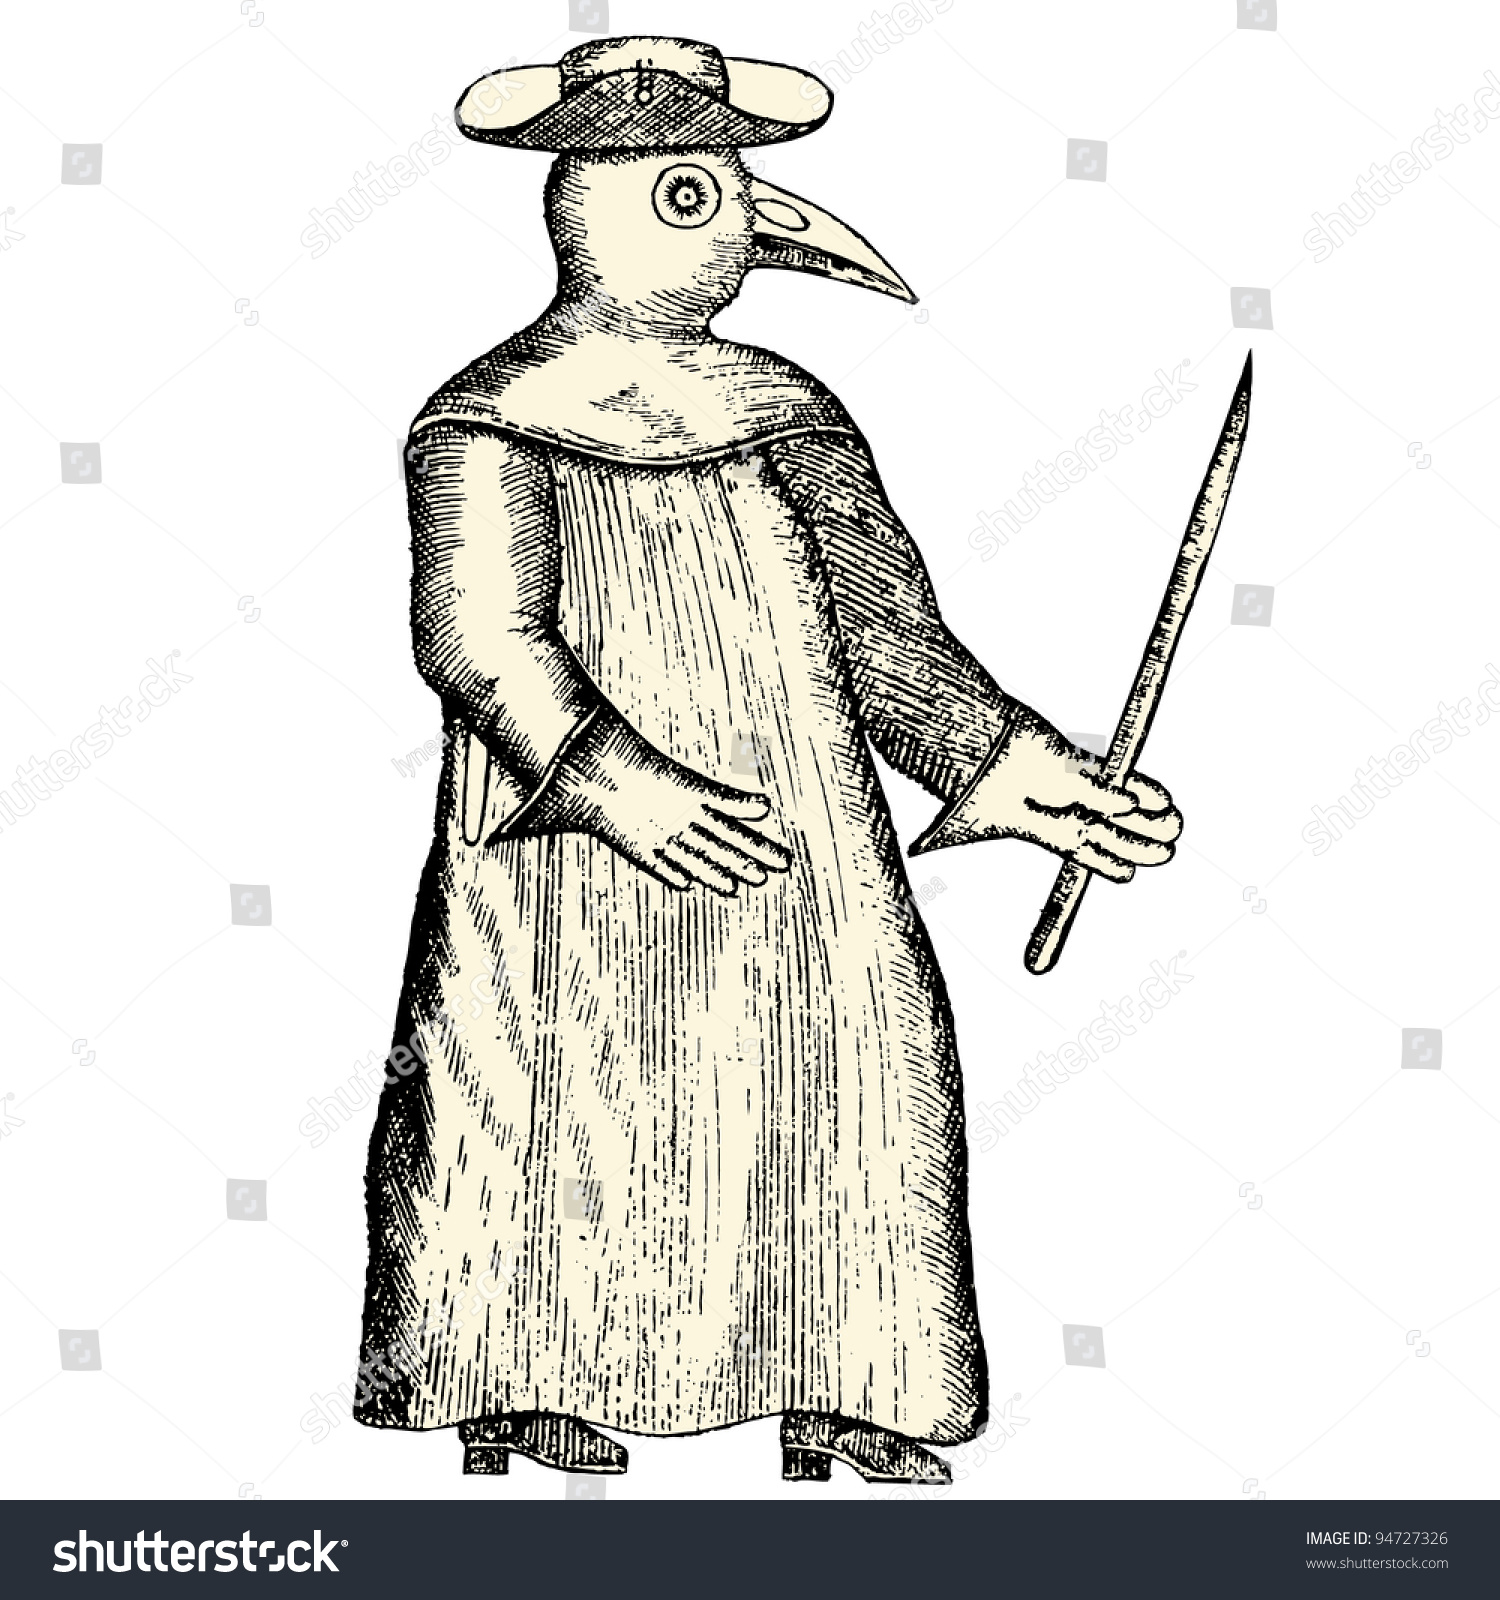 SVG of Habit of doctor during a plague epidemic - vintage engraved illustration - 